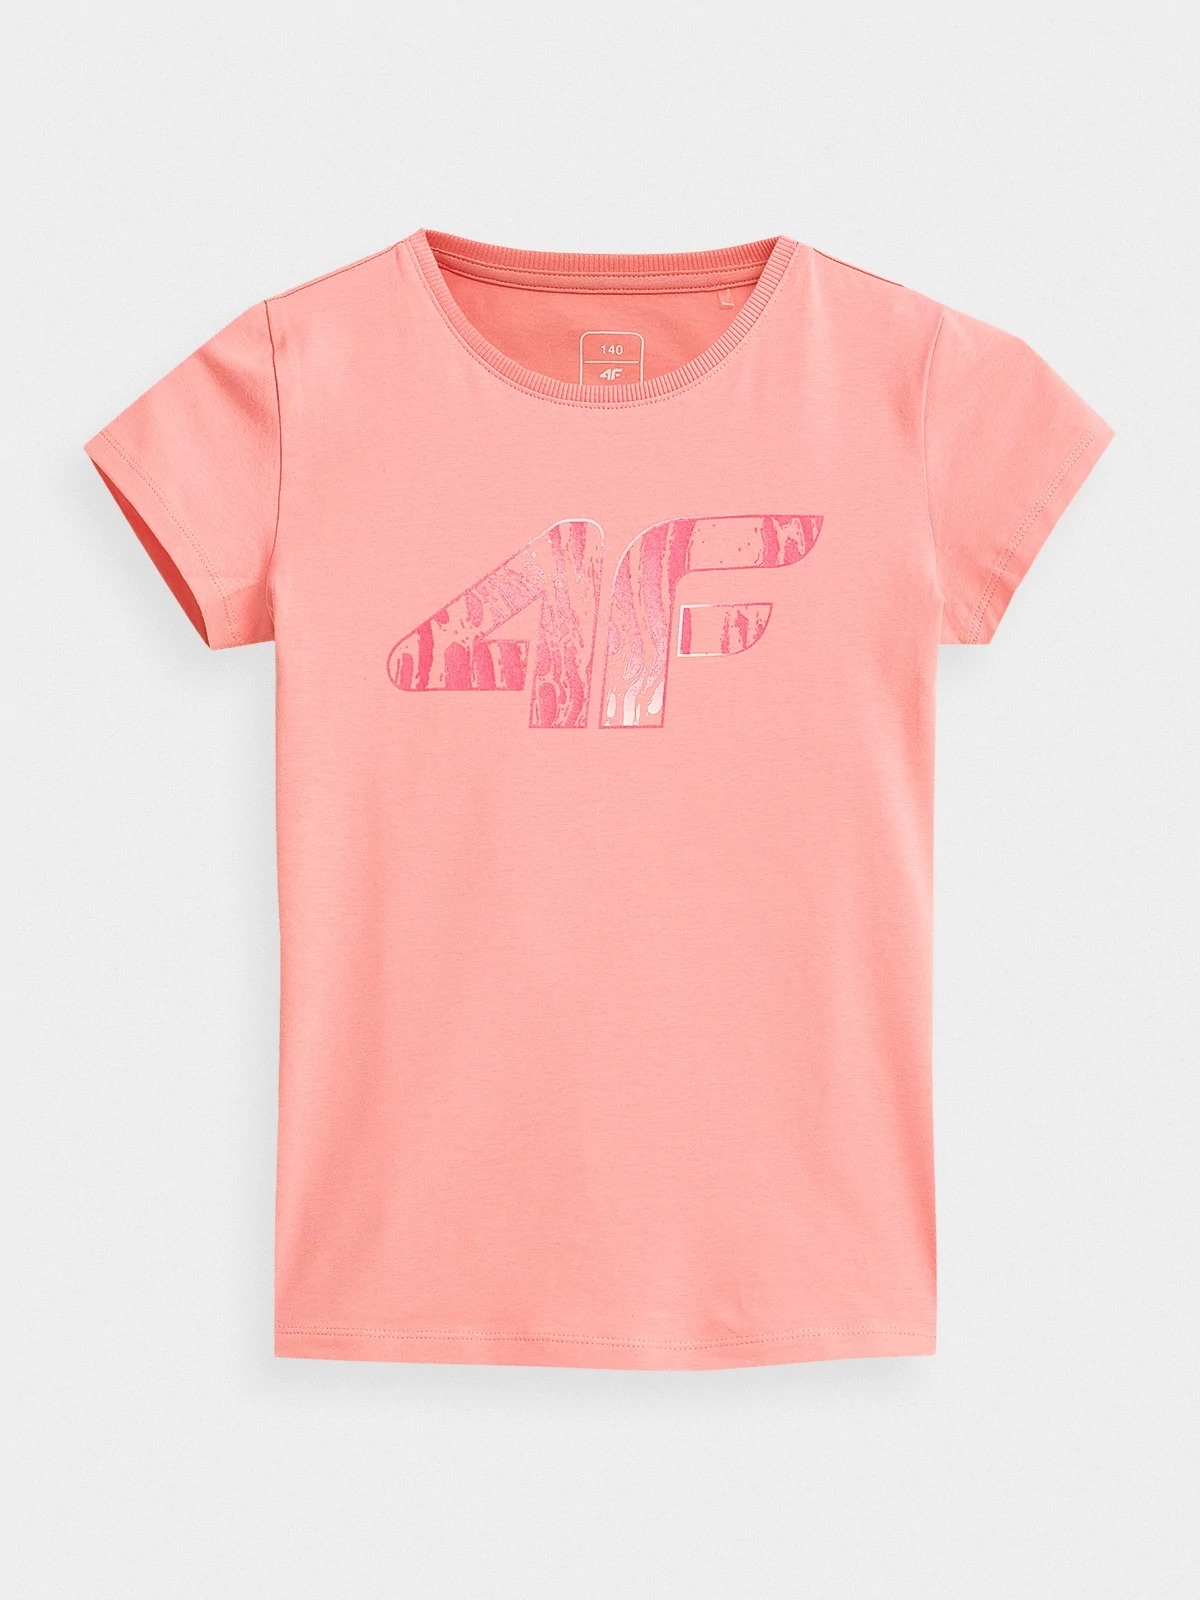 фото Футболка 4f girl's t-shirts hjz21-jtsd009a-56s цв.розовый р. 140